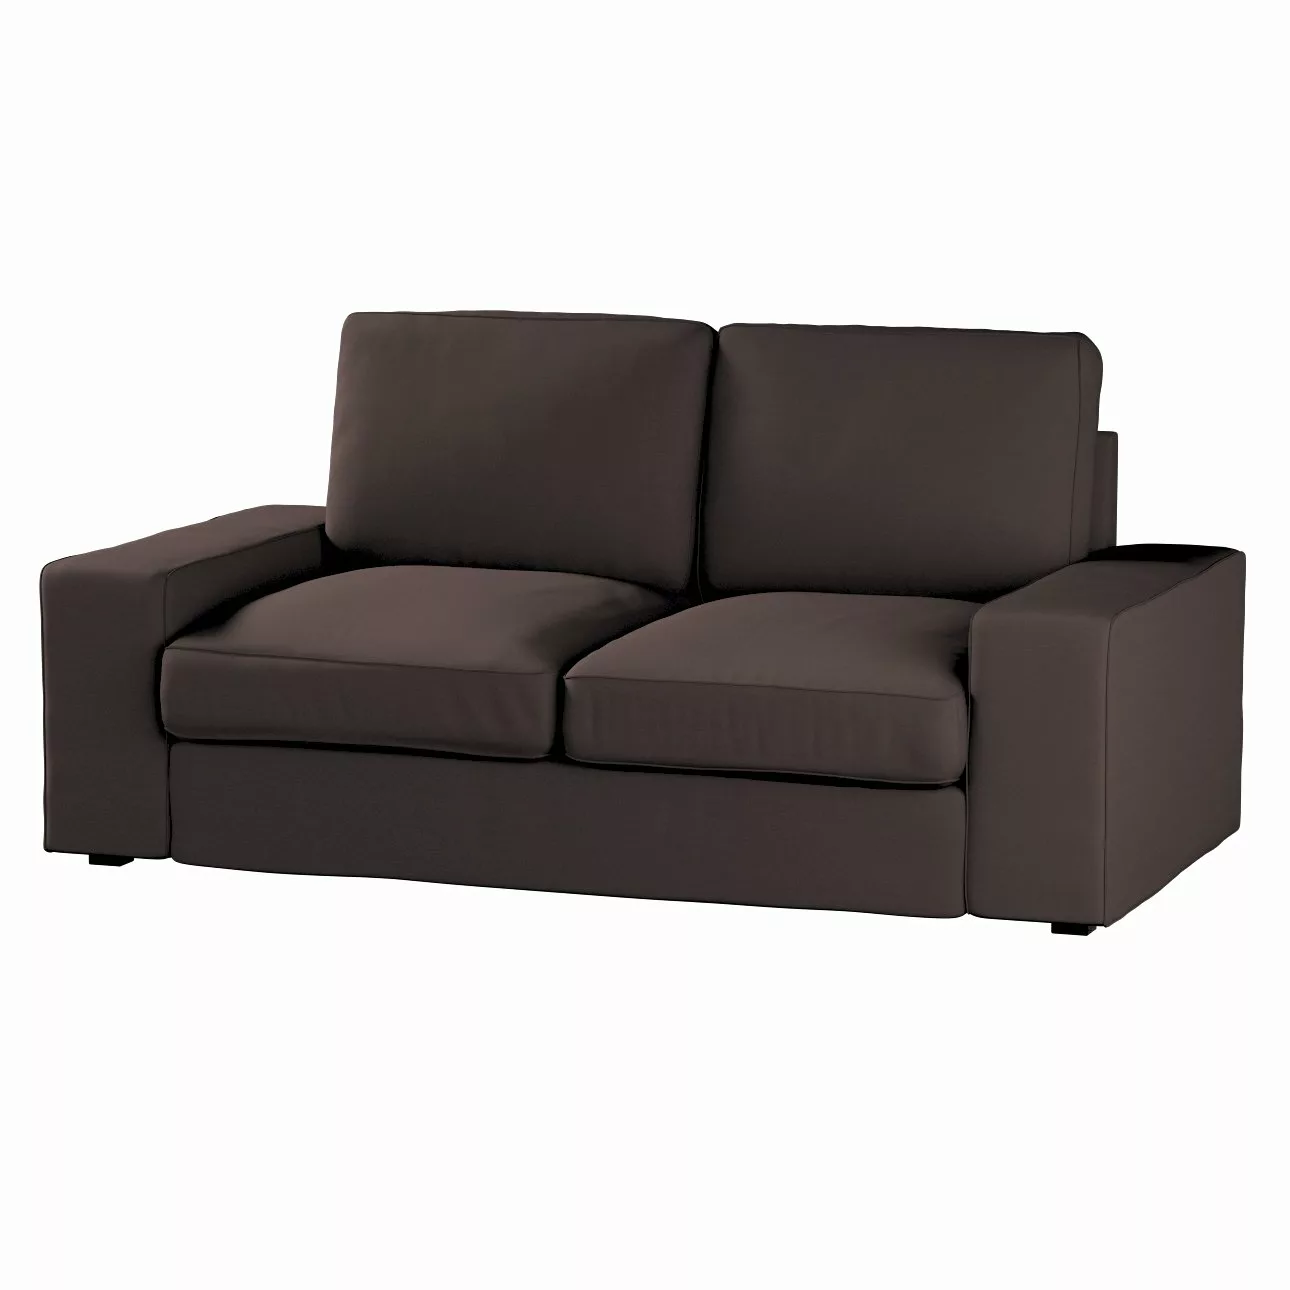 Bezug für Kivik 2-Sitzer Sofa, Kaffee, Bezug für Sofa Kivik 2-Sitzer, Cotto günstig online kaufen